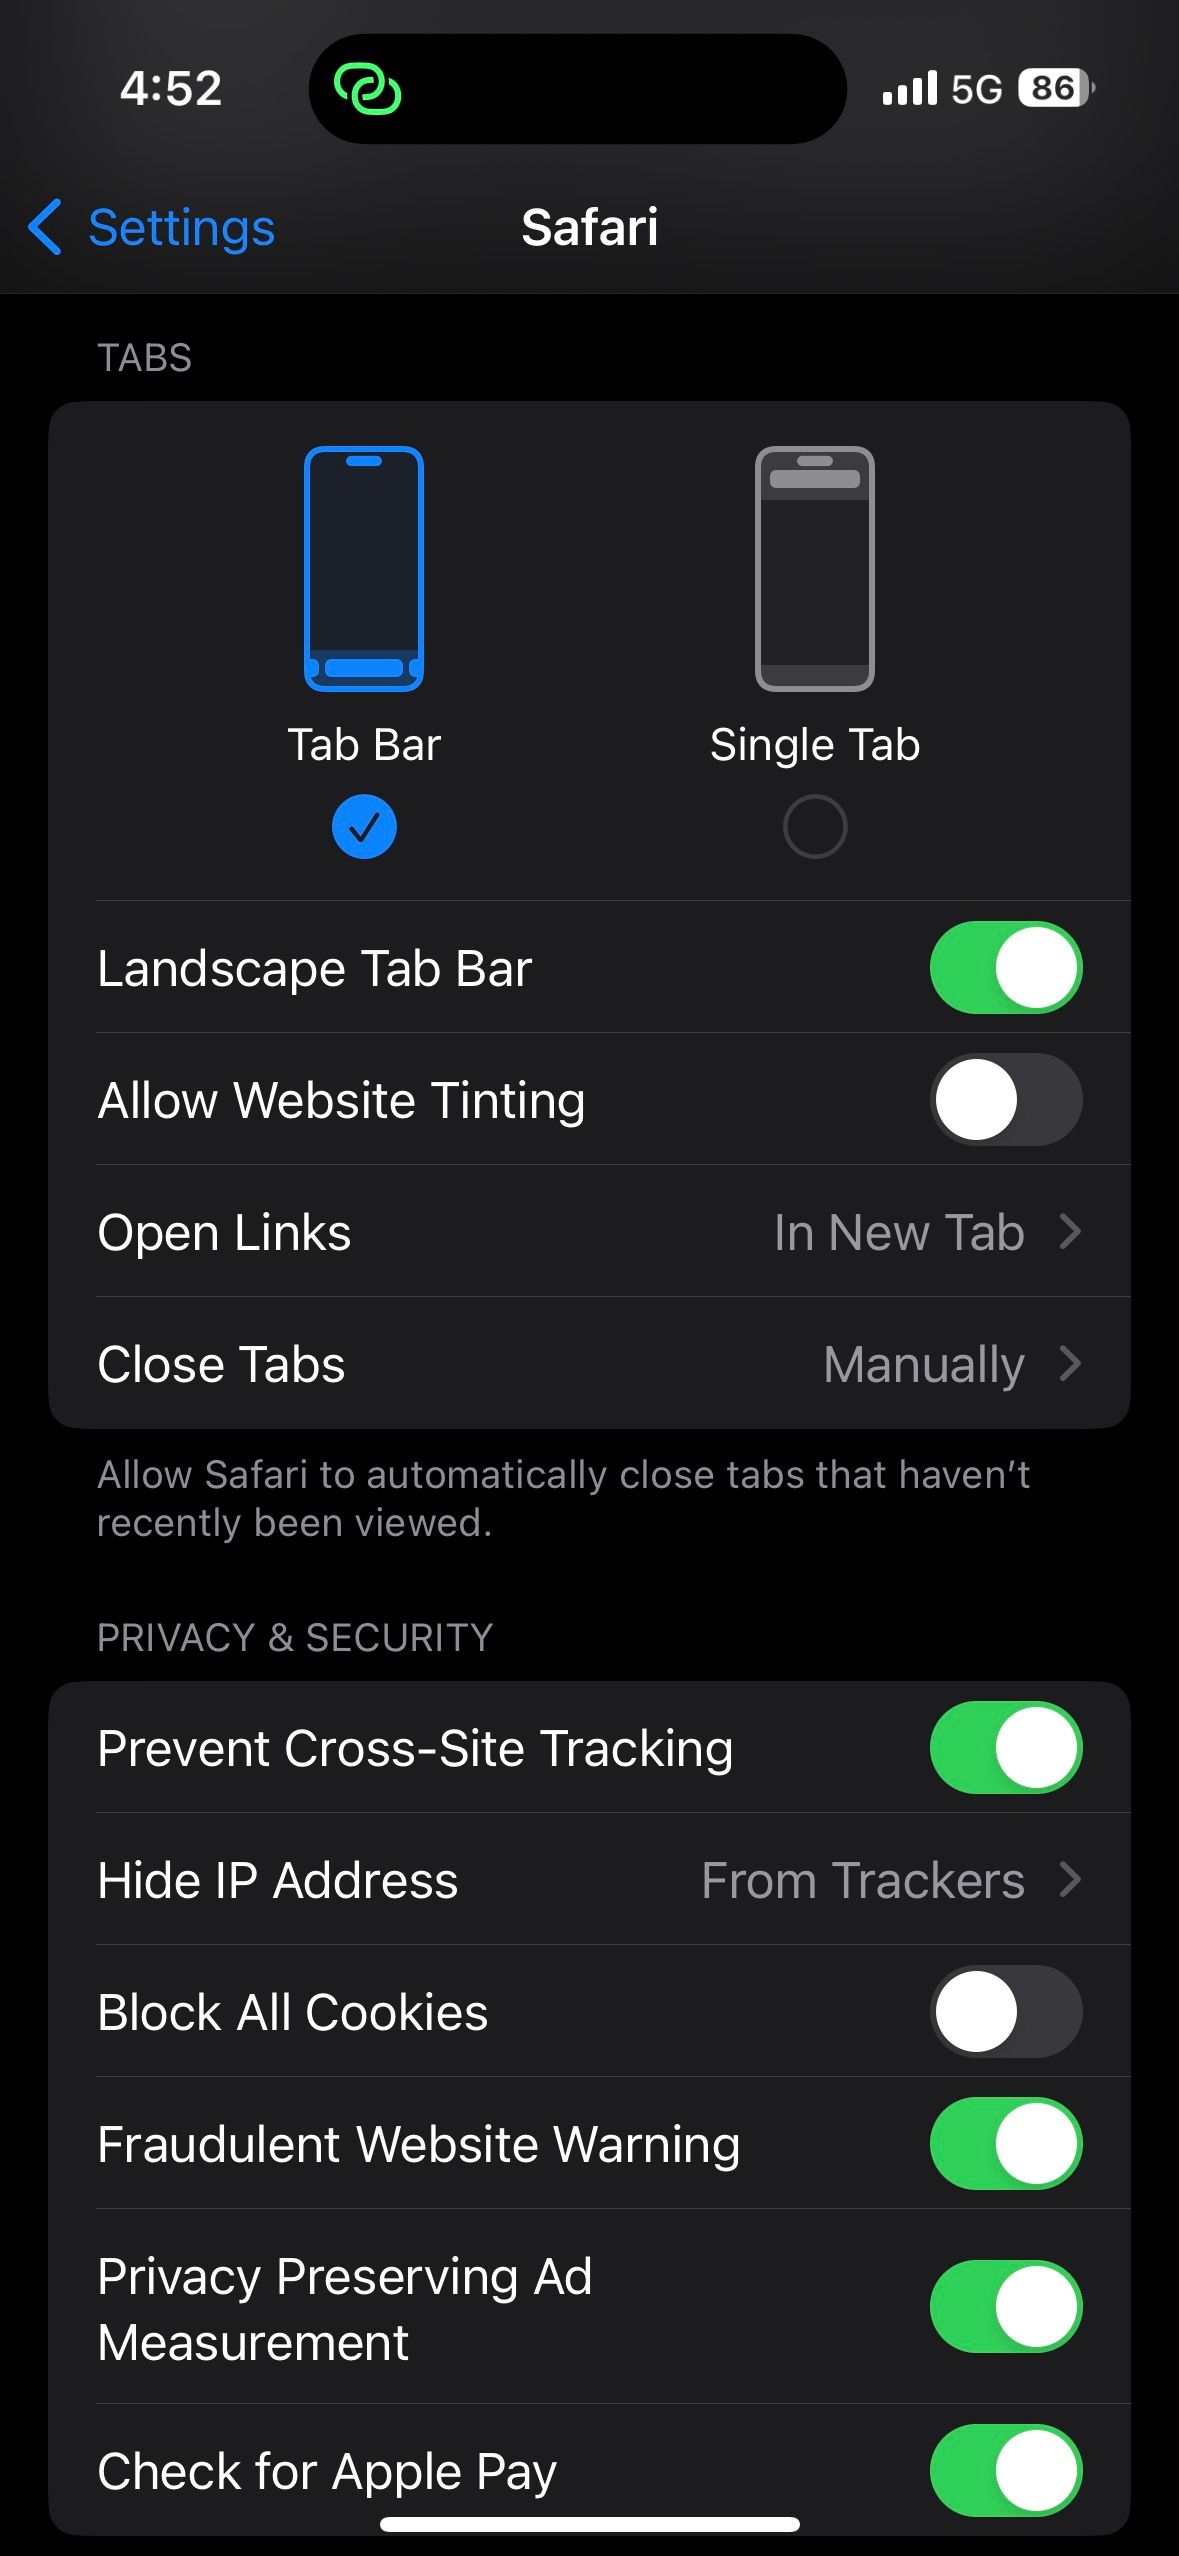 safari tab settings in iOS settings app